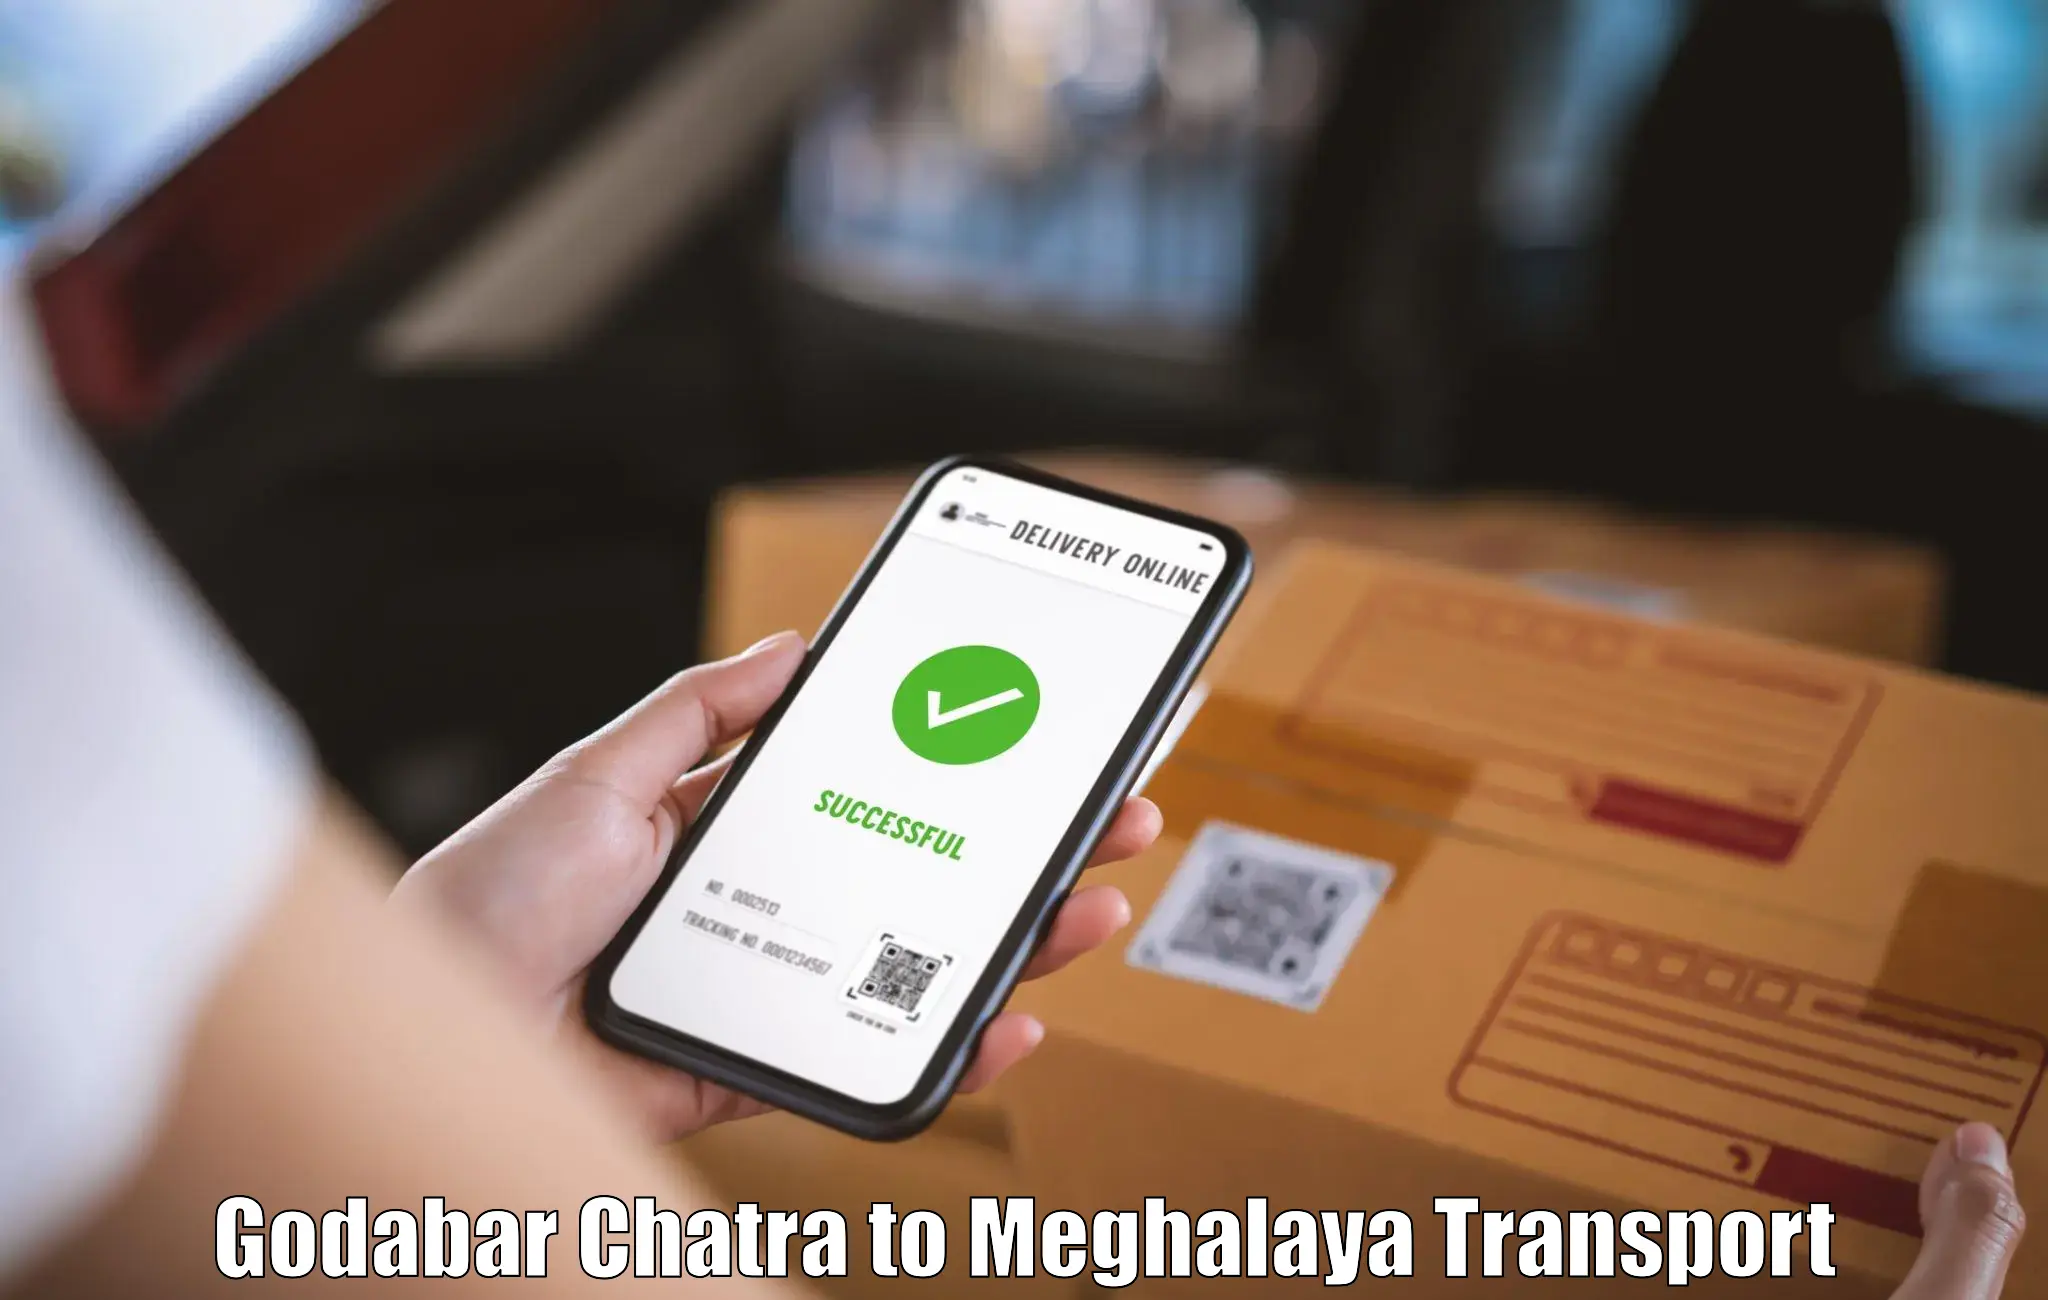 Cargo transportation services Godabar Chatra to Tura